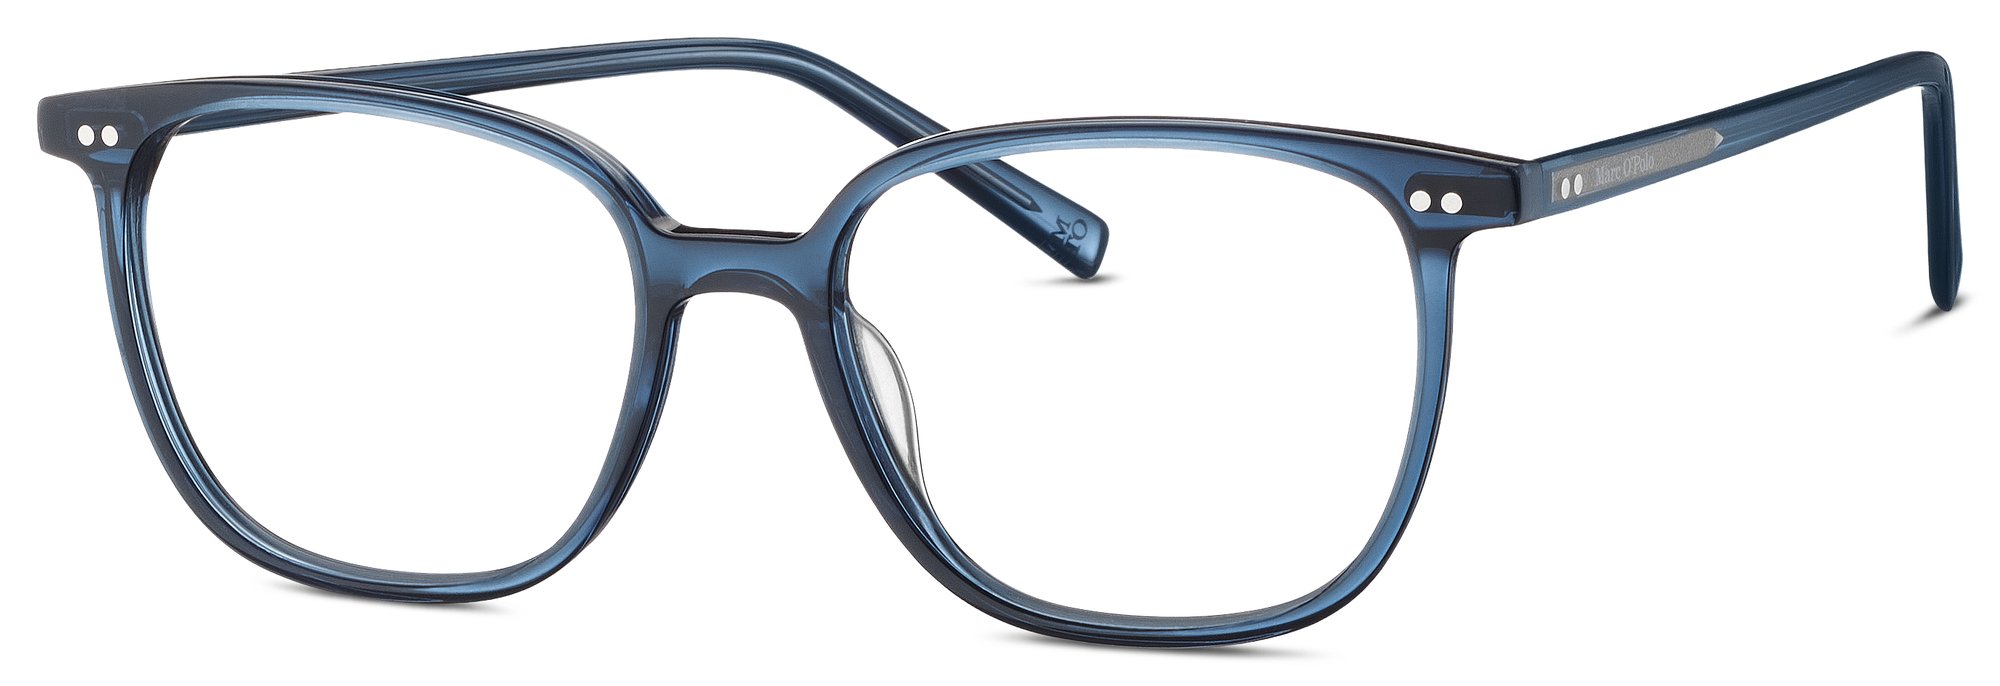 Das Bild zeigt die Korrektionsbrille 503196 70 von der Marke Marc O‘Polo in blau